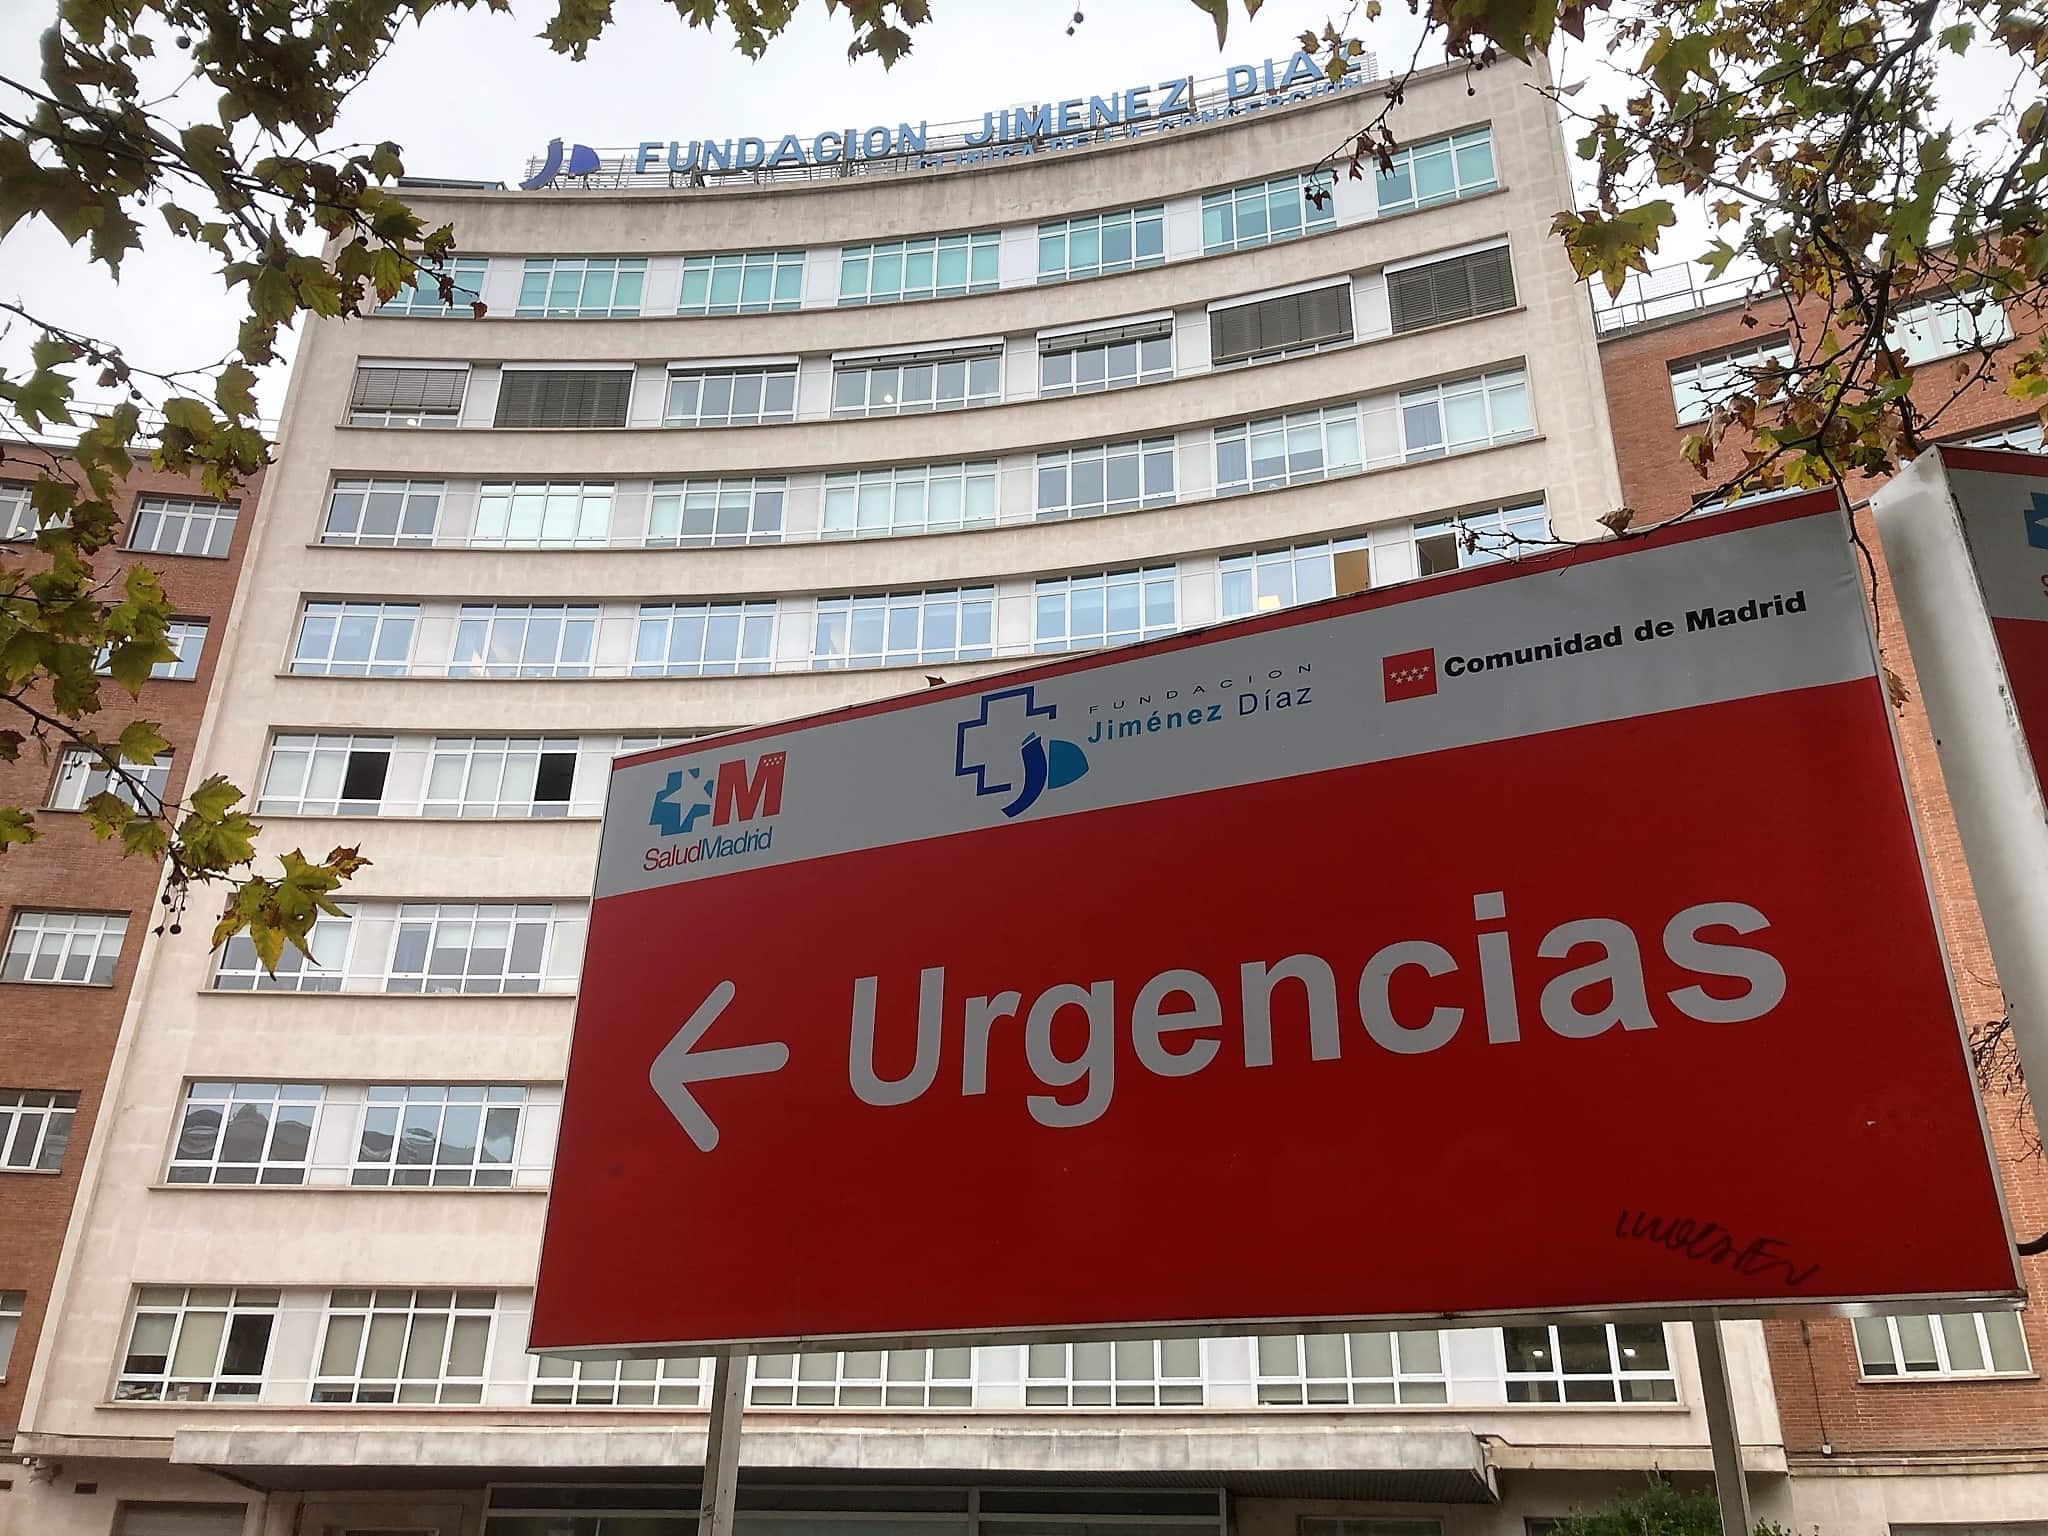 Unidad Odontológica del sueño  Hospital Universitario Fundación Jiménez  Díaz